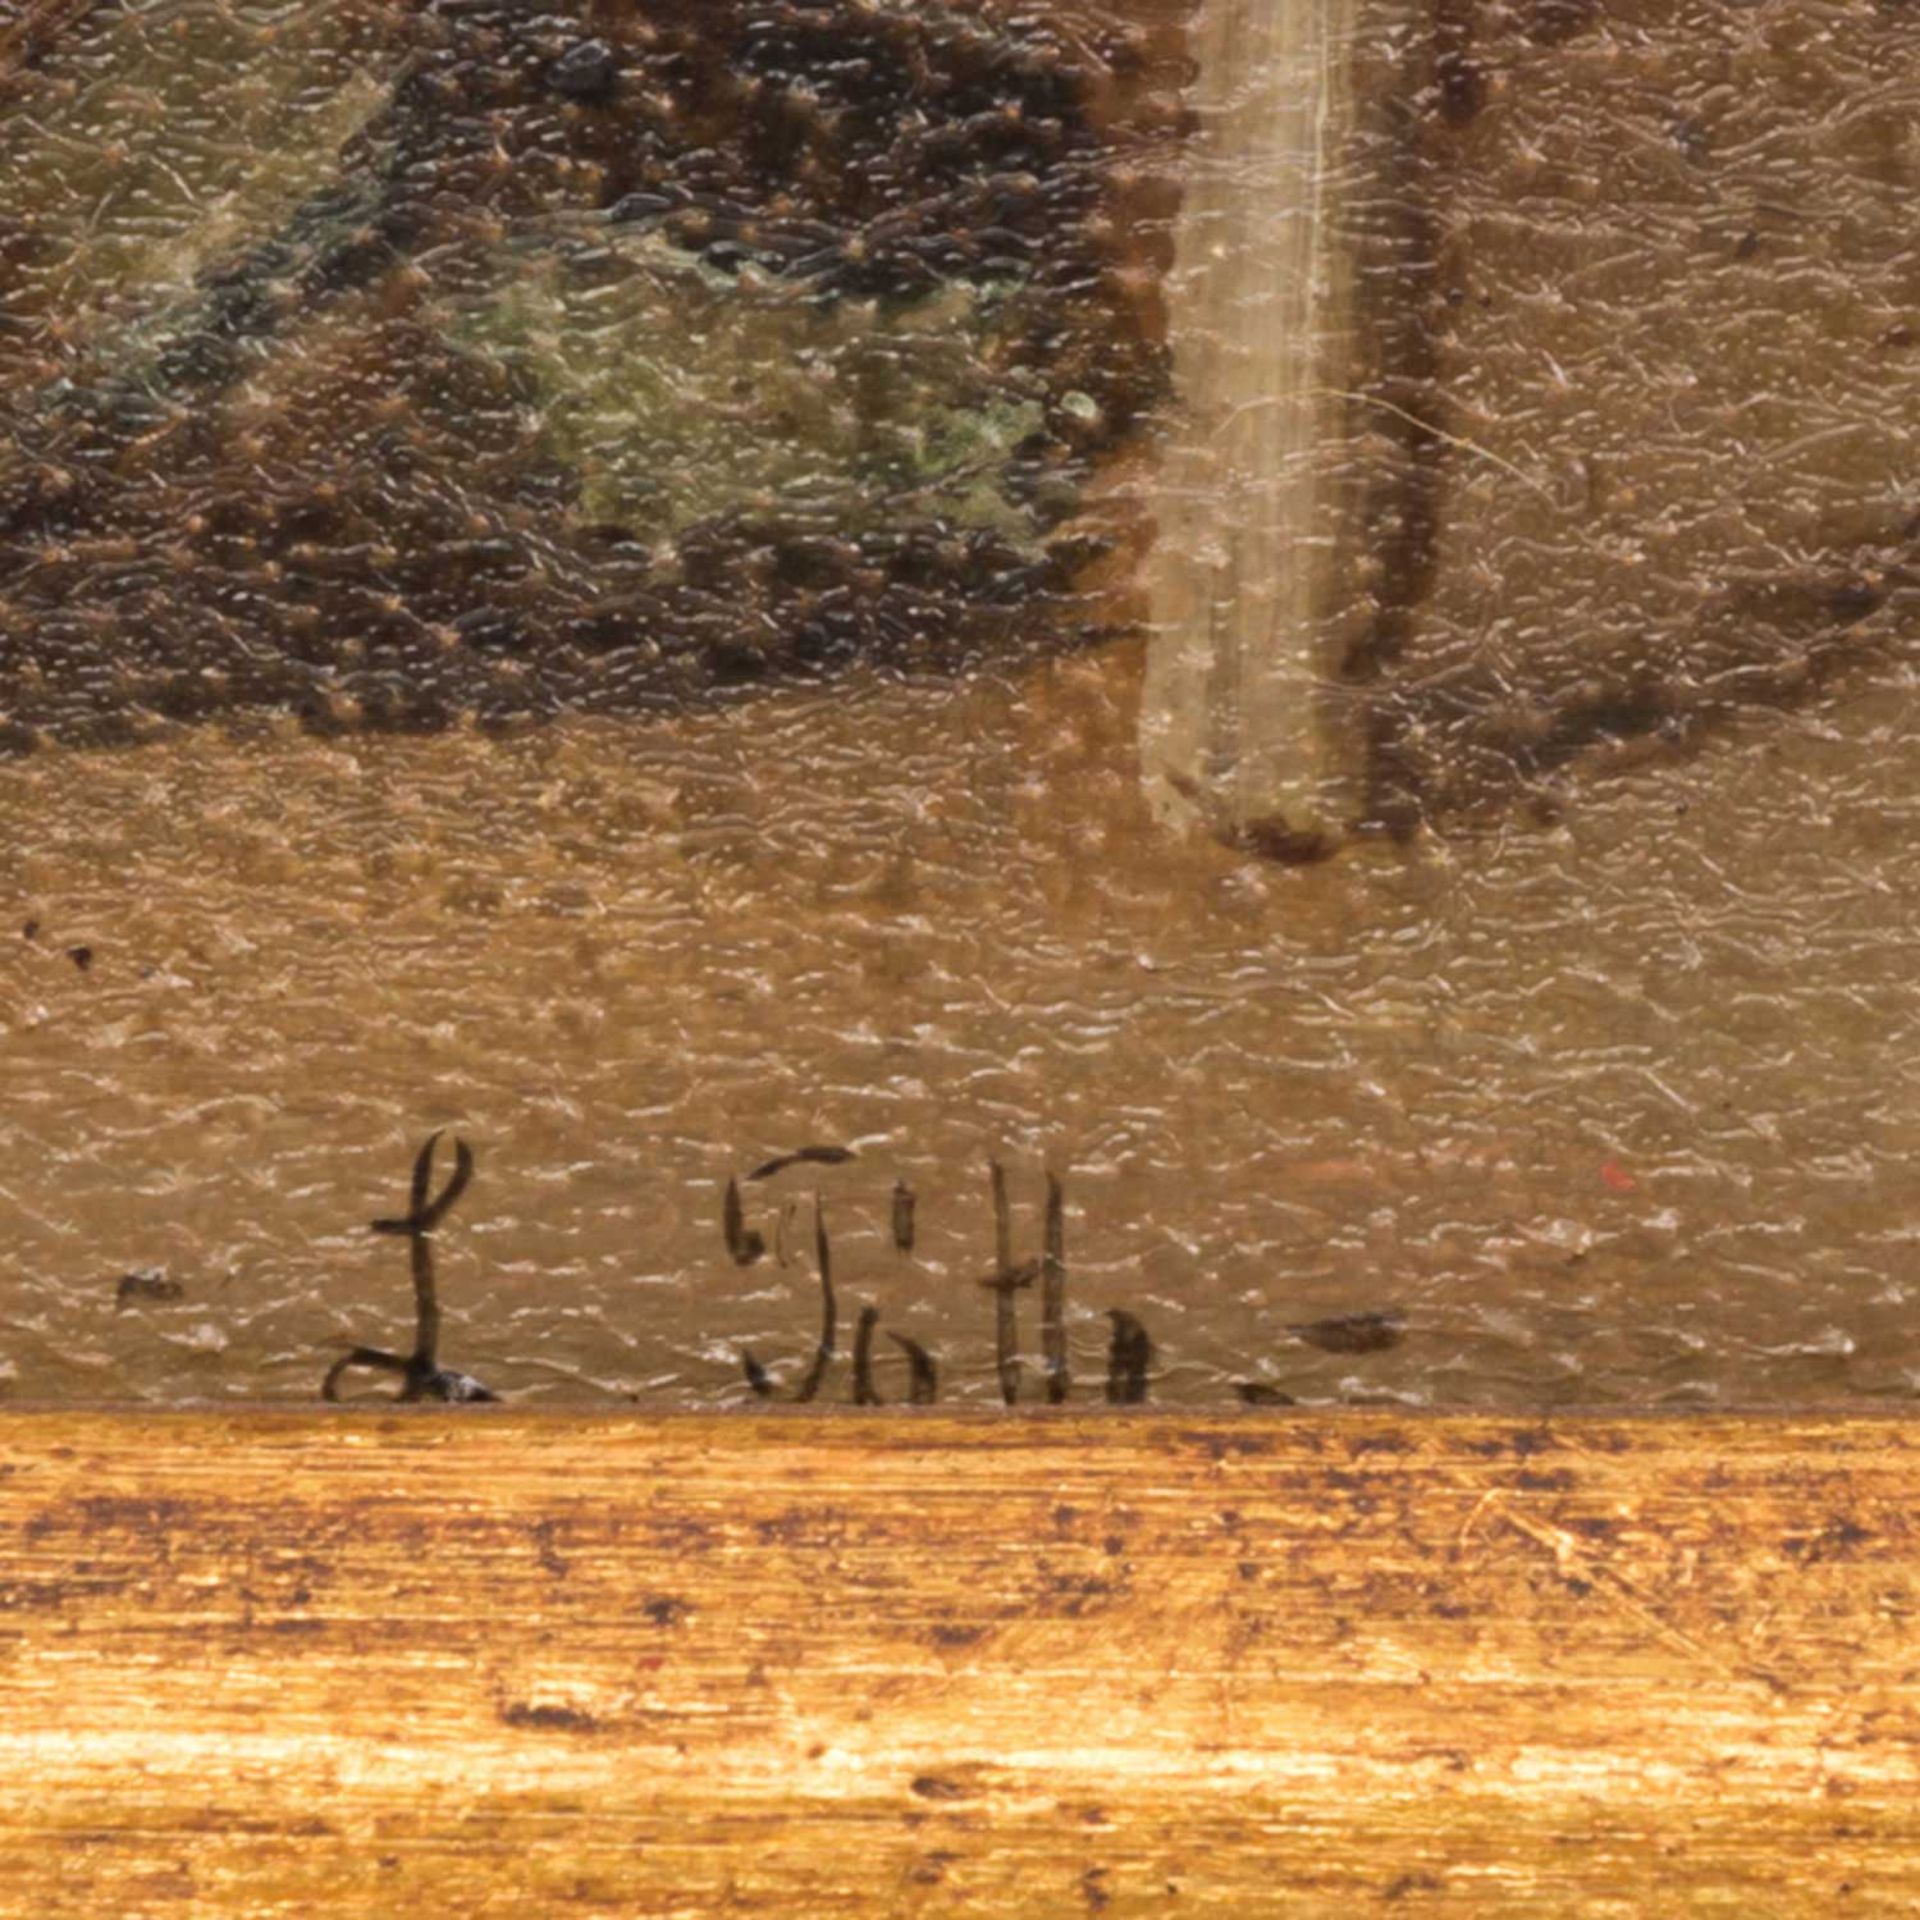 POTTER, L. (Maler 19./20. Jh.), "In der Wirtsstube", beim Trinkgelage, u.re. sign., Öl auf Holz, ca. - Bild 3 aus 4